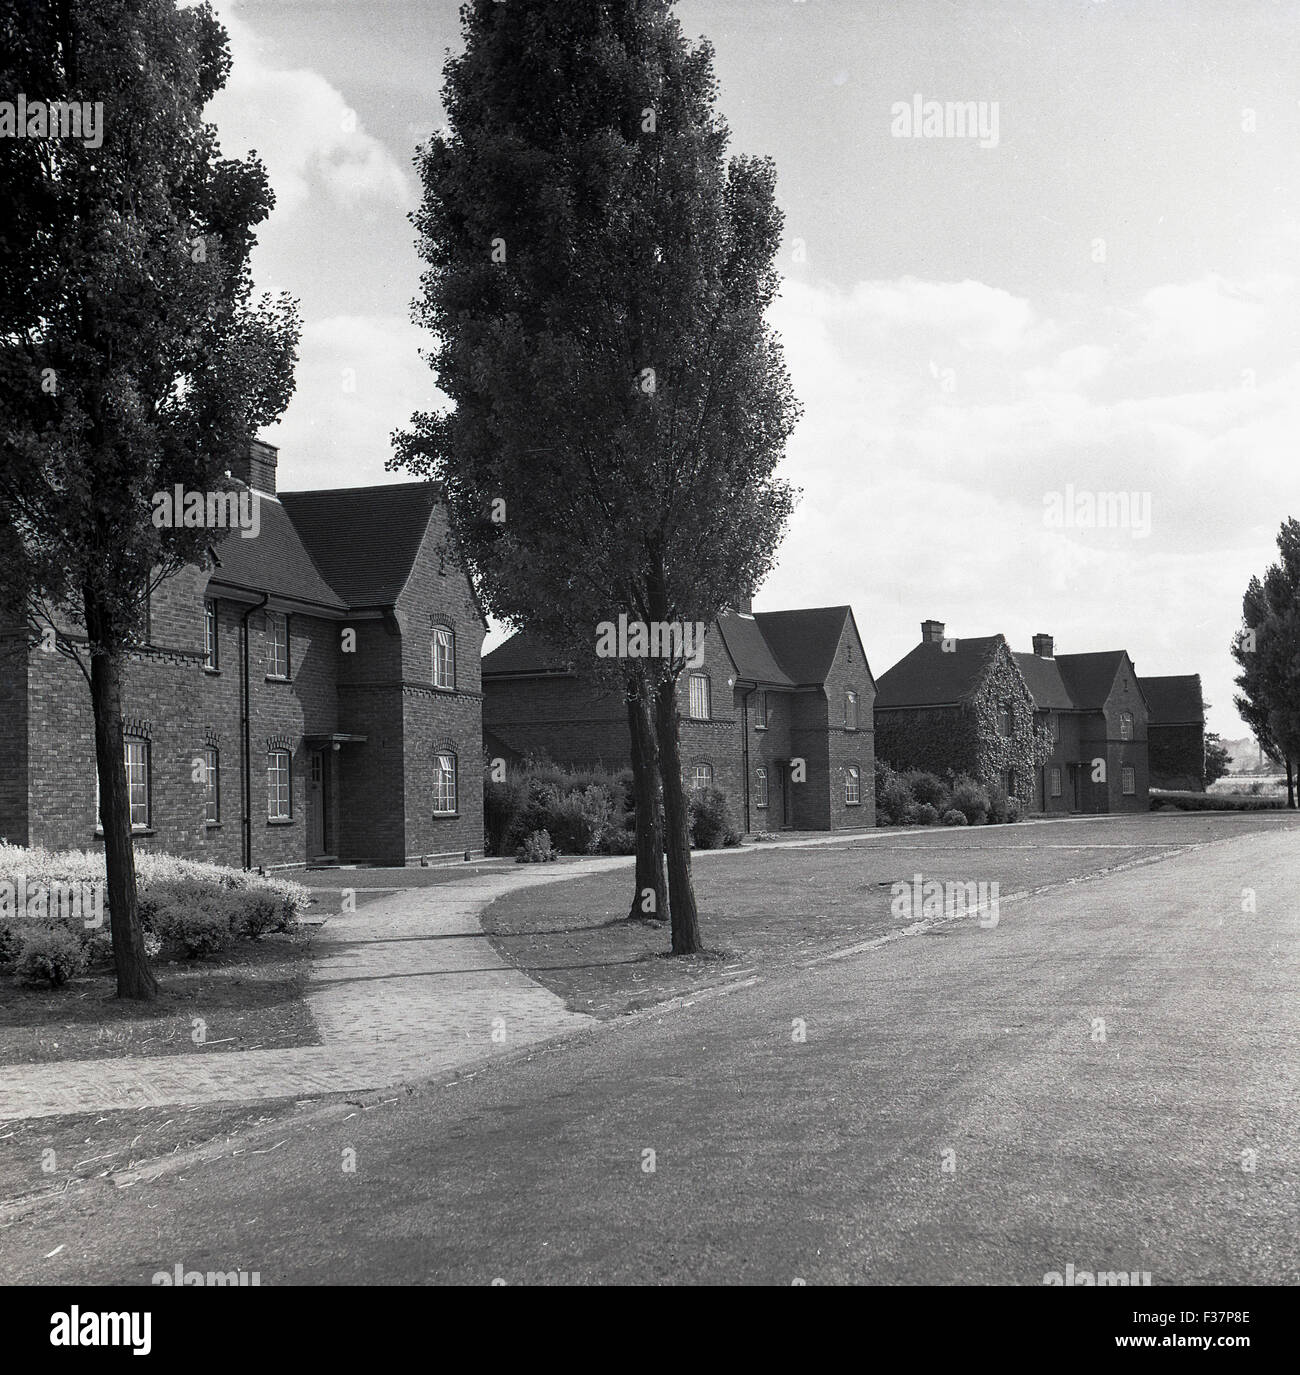 Années 1950, historique, construit de brique et de logement village environnement spacieux conçu et construit pour les employés de la London Brick Company à Stewartby, Bedford, en Angleterre. Banque D'Images